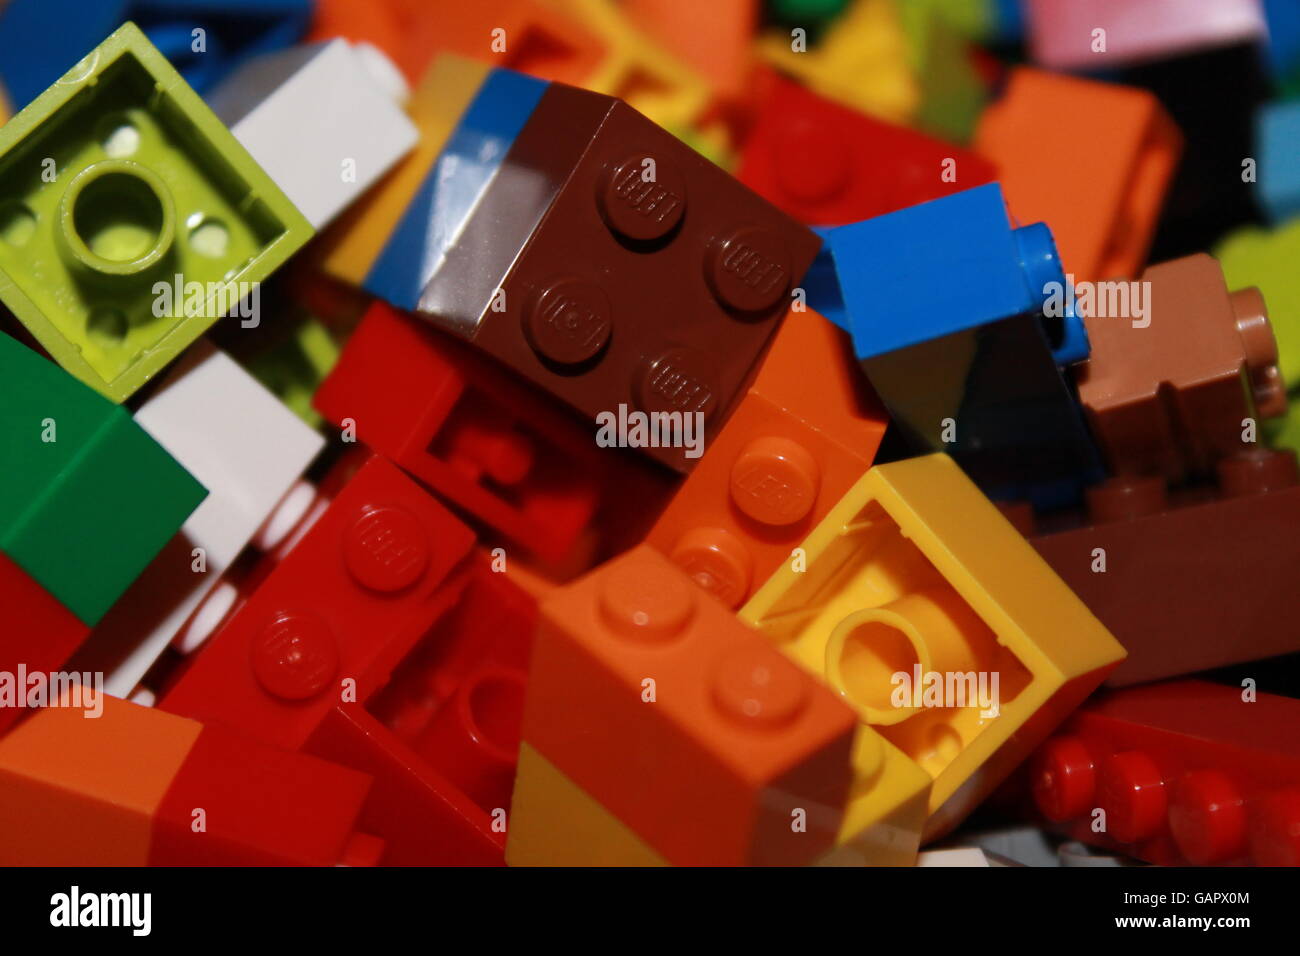 Des briques Lego, jouets, enfants, jouer, jeux, Danemark Banque D'Images